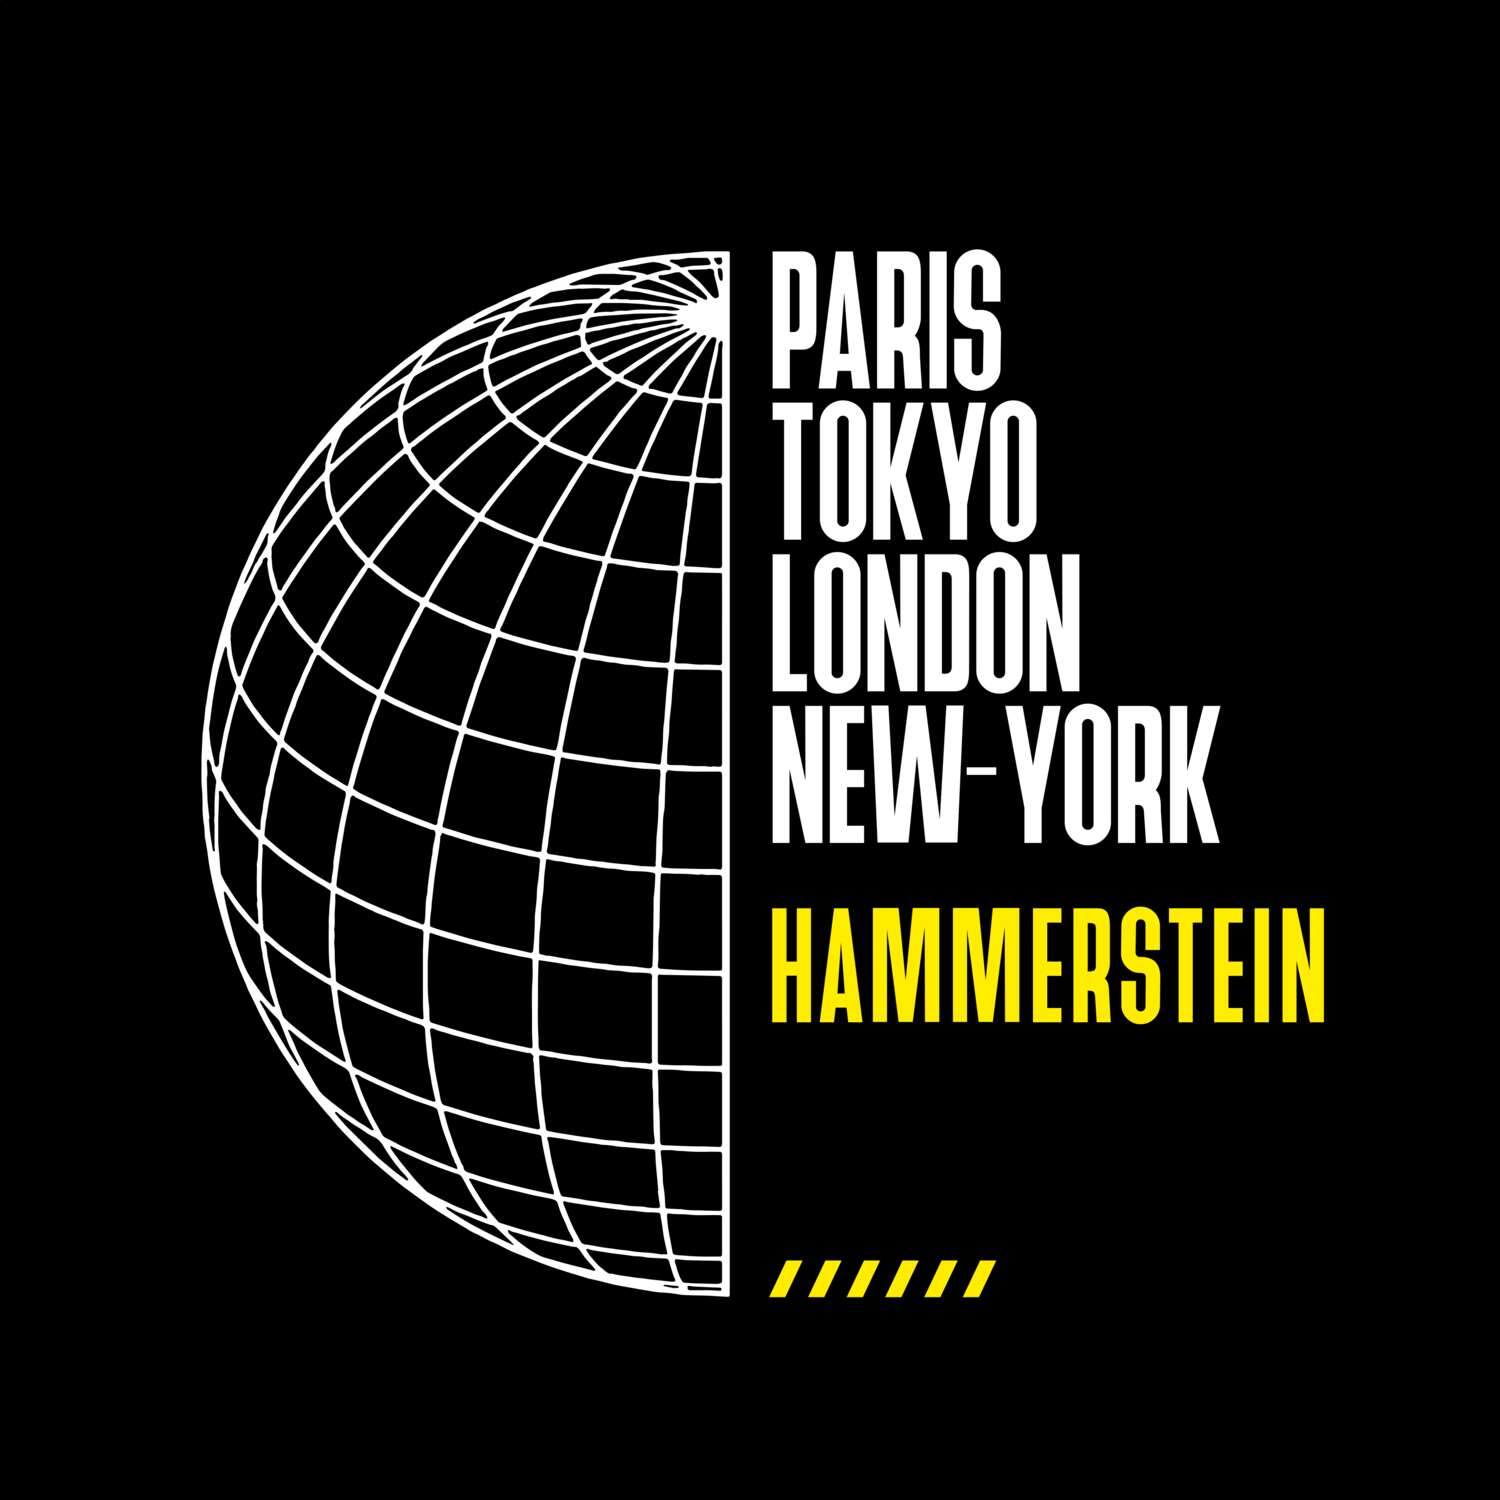 Hammerstein T-Shirt »Paris Tokyo London«